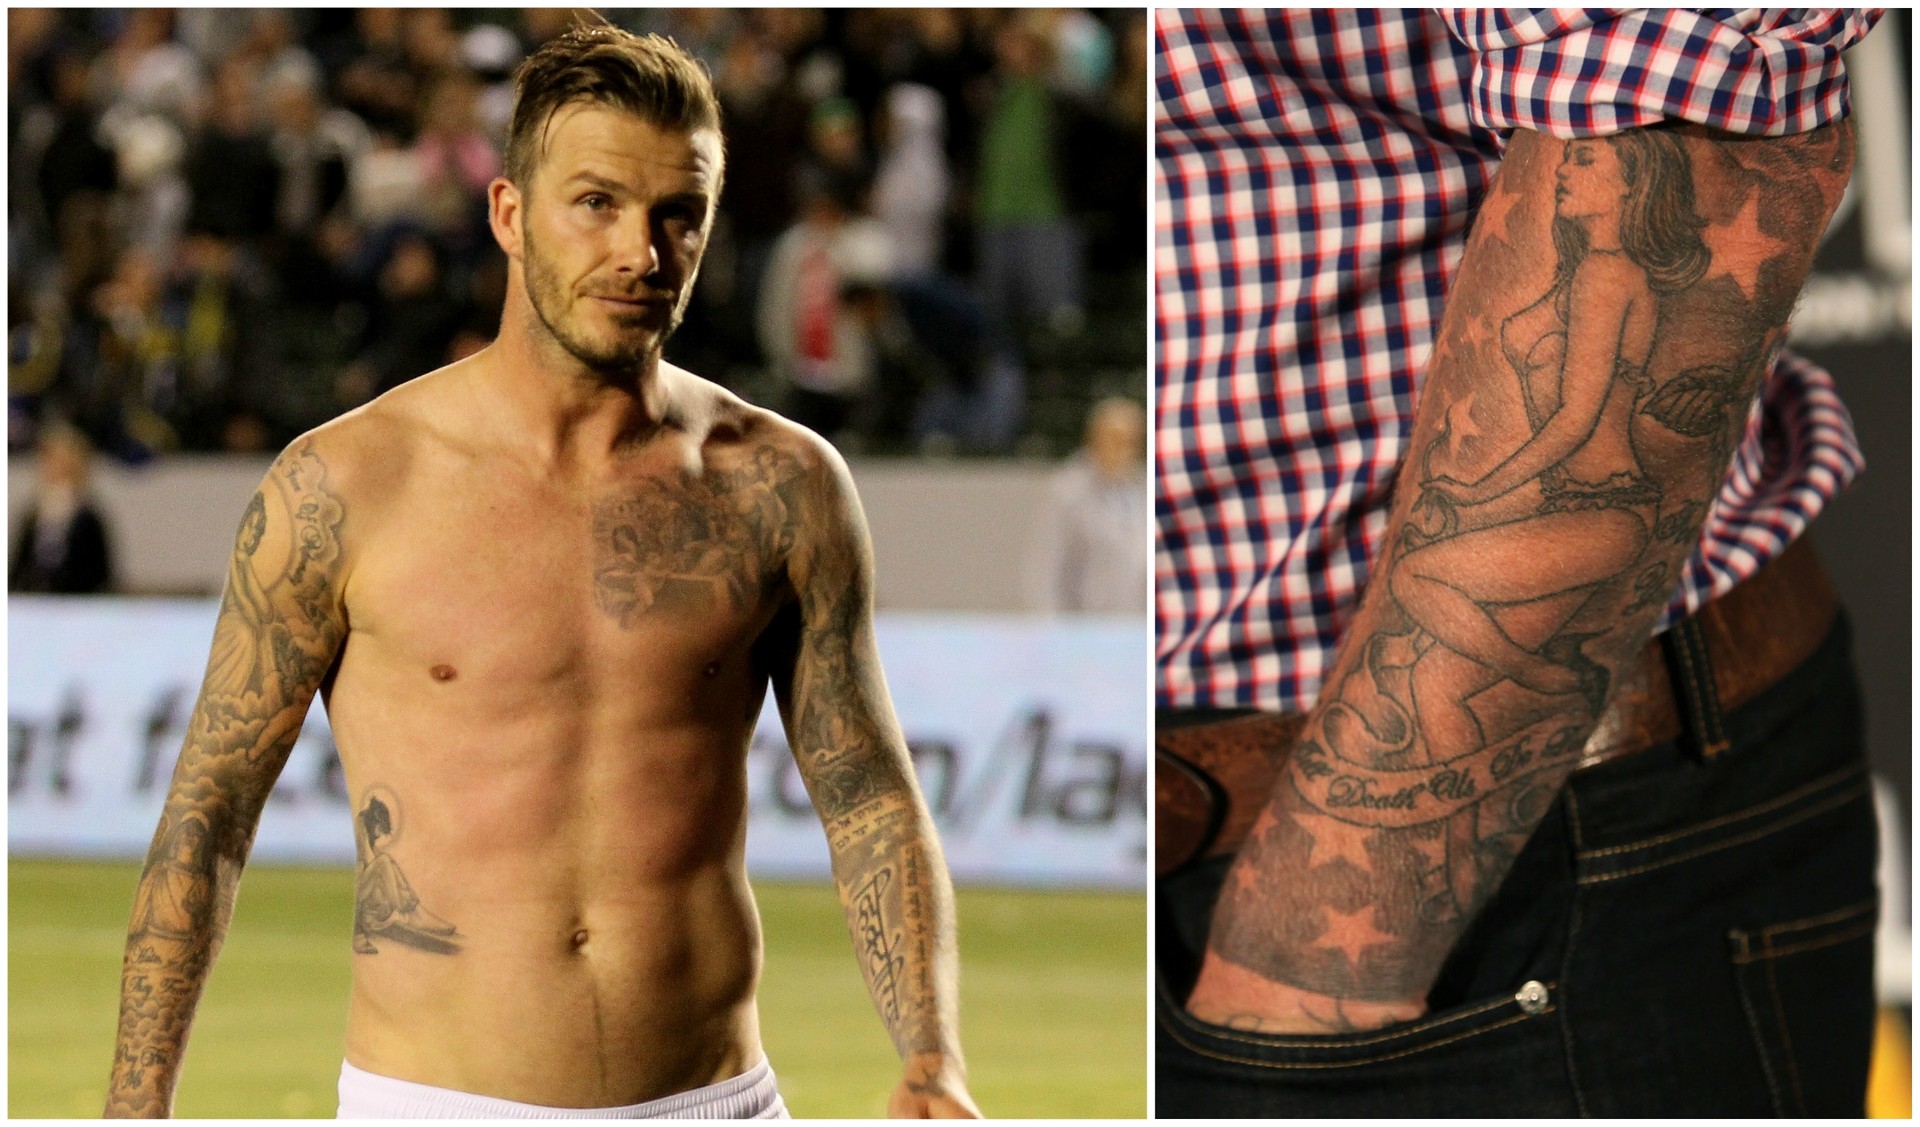 O ex-jogador de futebol britânico David Beckham tem um monte de tatuagens. Três delas são dedicadas à esposa, Victoria: o nome dela em hindi, a data do noivado com ela, e uma pin-up no braço esquerdo inspirada na estilista e ex-Spice Girl. (Foto: Getty Images)